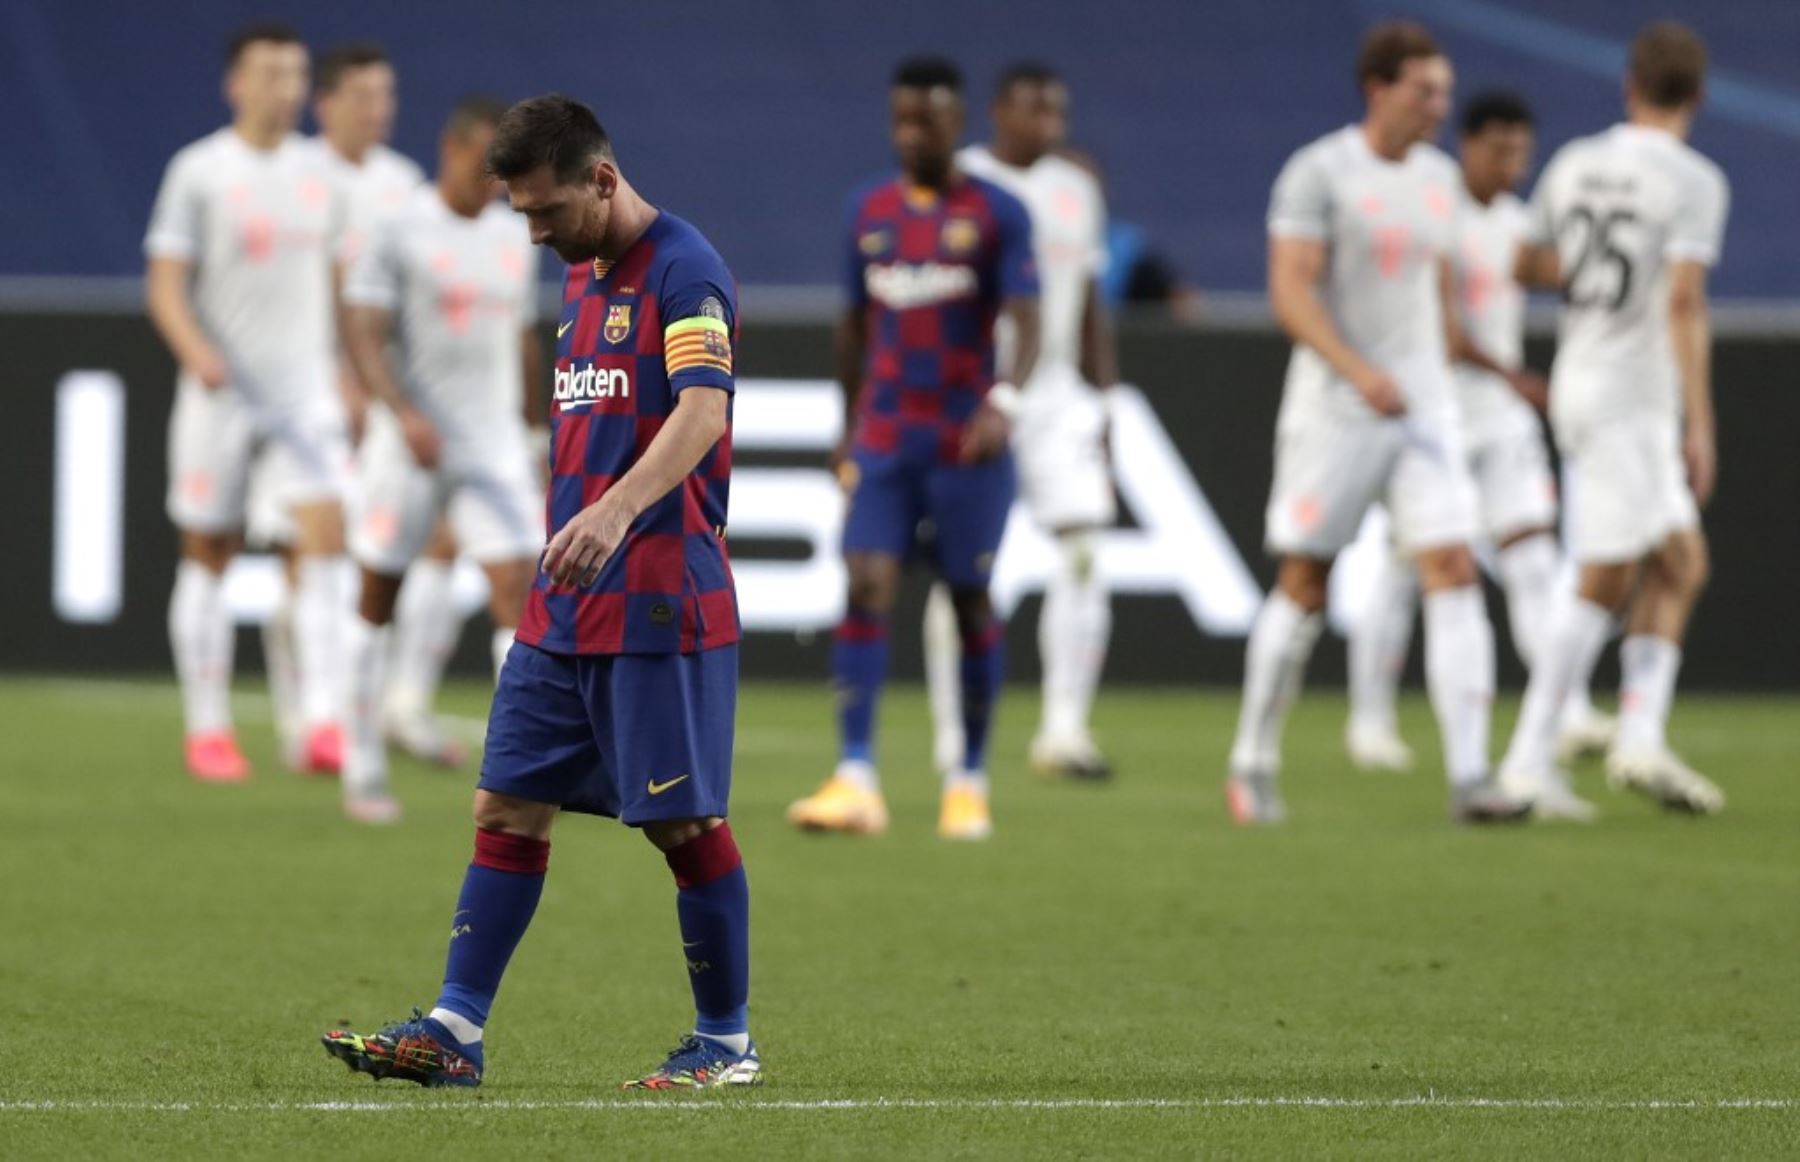 El delantero argentino del Barcelona Lionel Messi reacciona durante el partido de fútbol de cuartos de final de la Liga de Campeones de la UEFA entre el Barcelona y el Bayern de Múnich en el estadio Luz de Lisboa.Foto:AFP